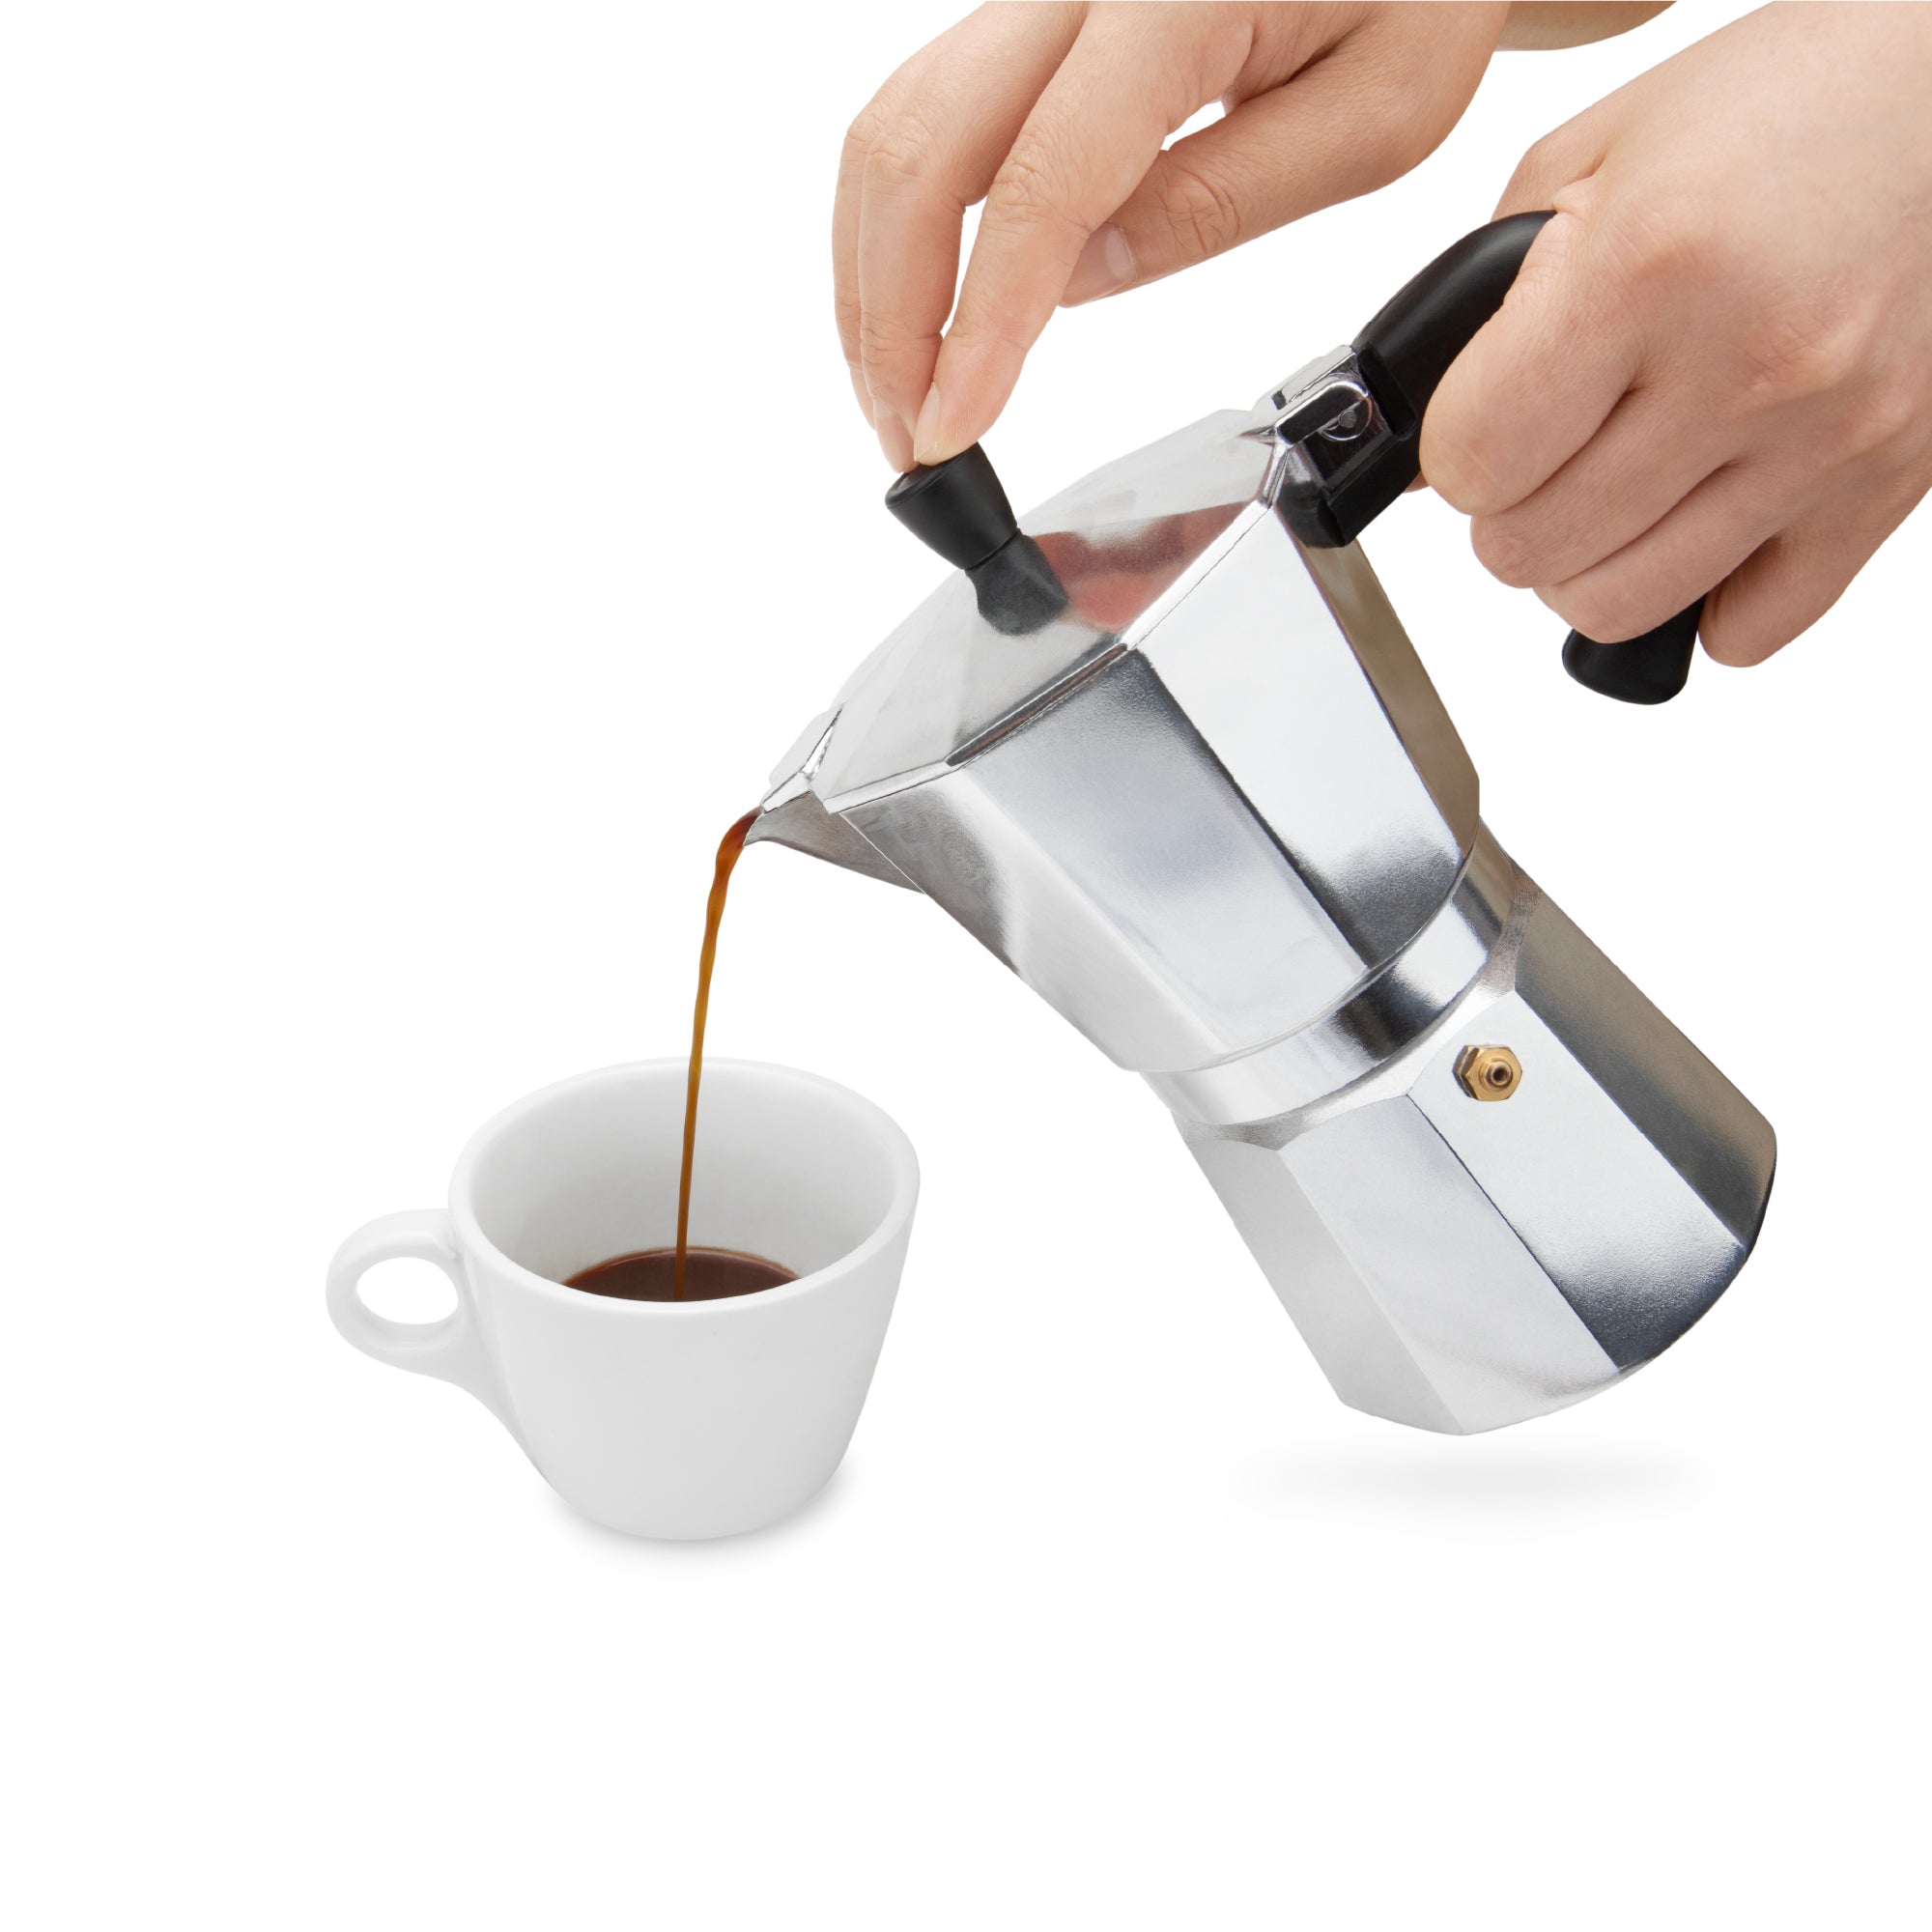 Sophia - Stove Top Espresso Coffee Maker - (6 Cup) – Cerini Coffee